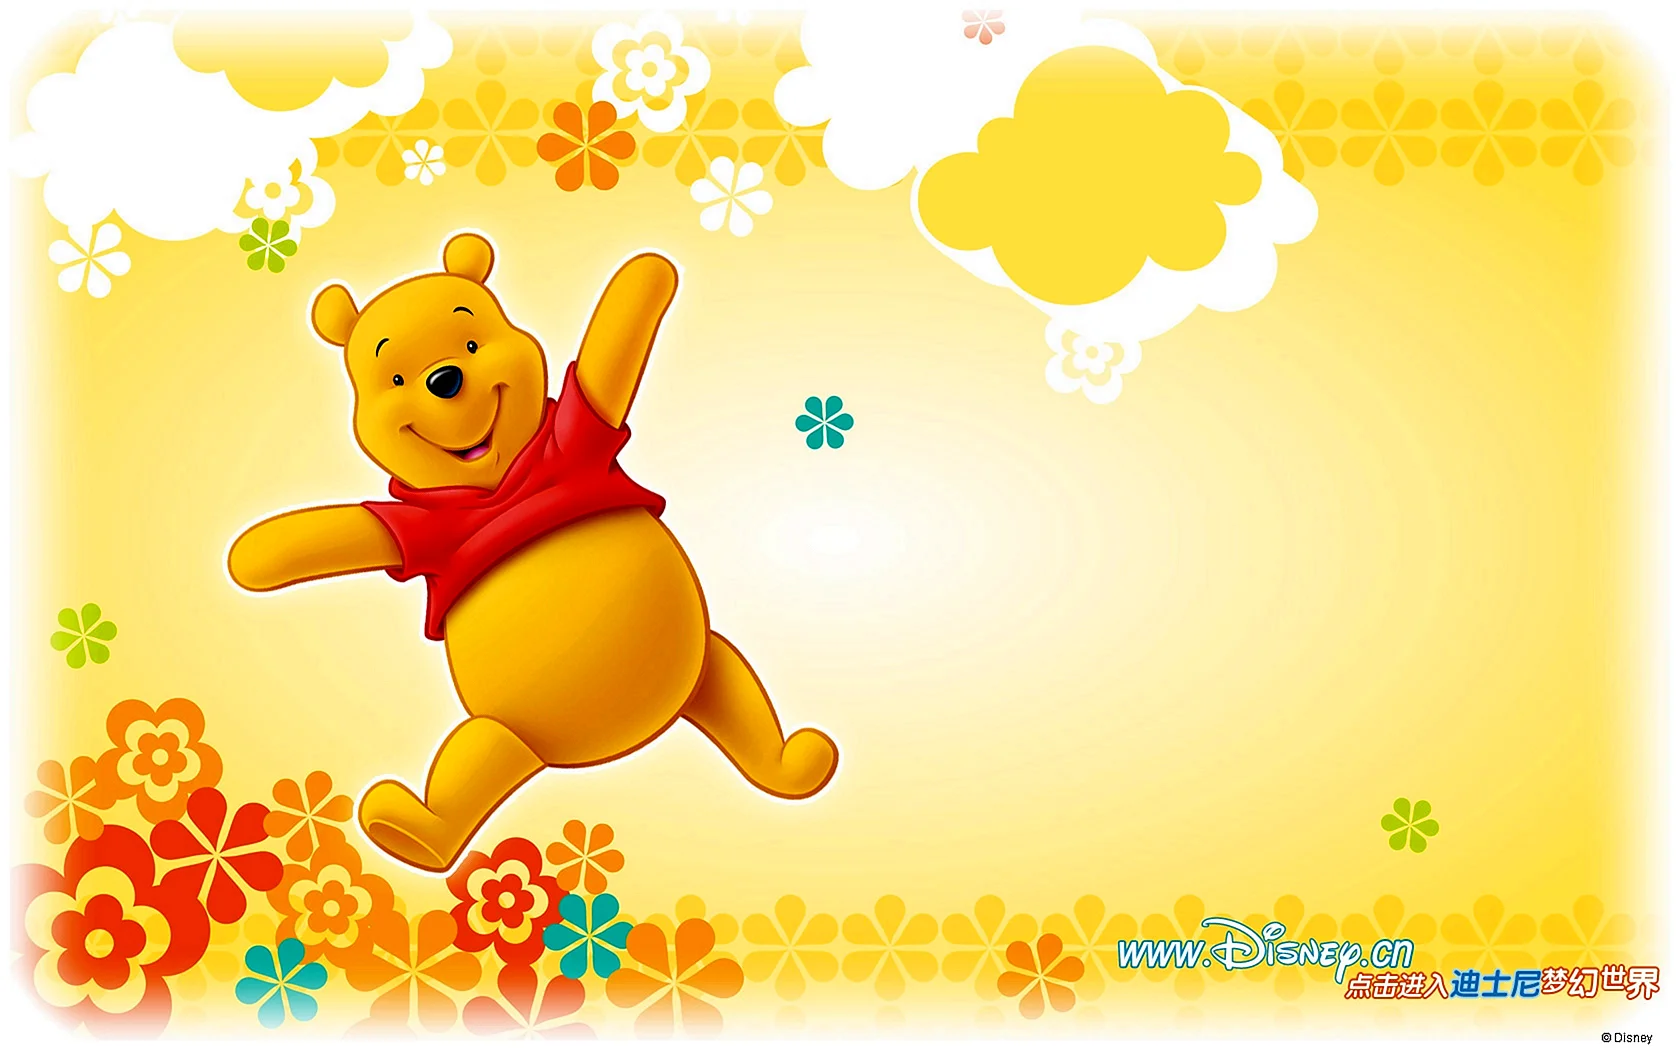 Winnie The Pooh Wallpaper